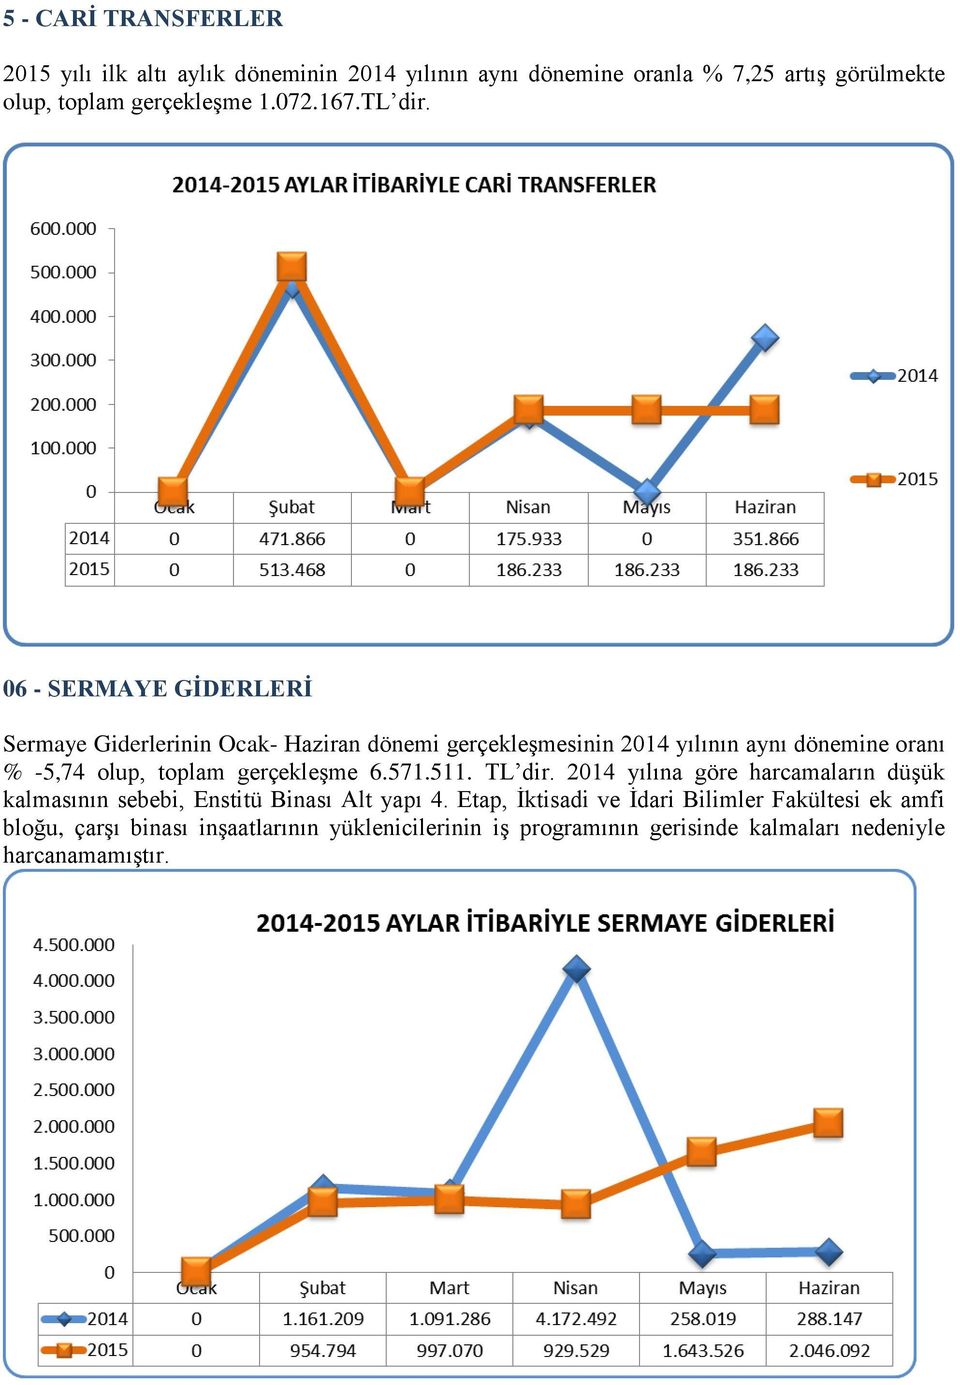 06 - SERMAYE GĠDERLERĠ Sermaye Giderlerinin Ocak- Haziran dönemi gerçekleşmesinin 2014 yılının aynı dönemine oranı % -5,74 olup, toplam